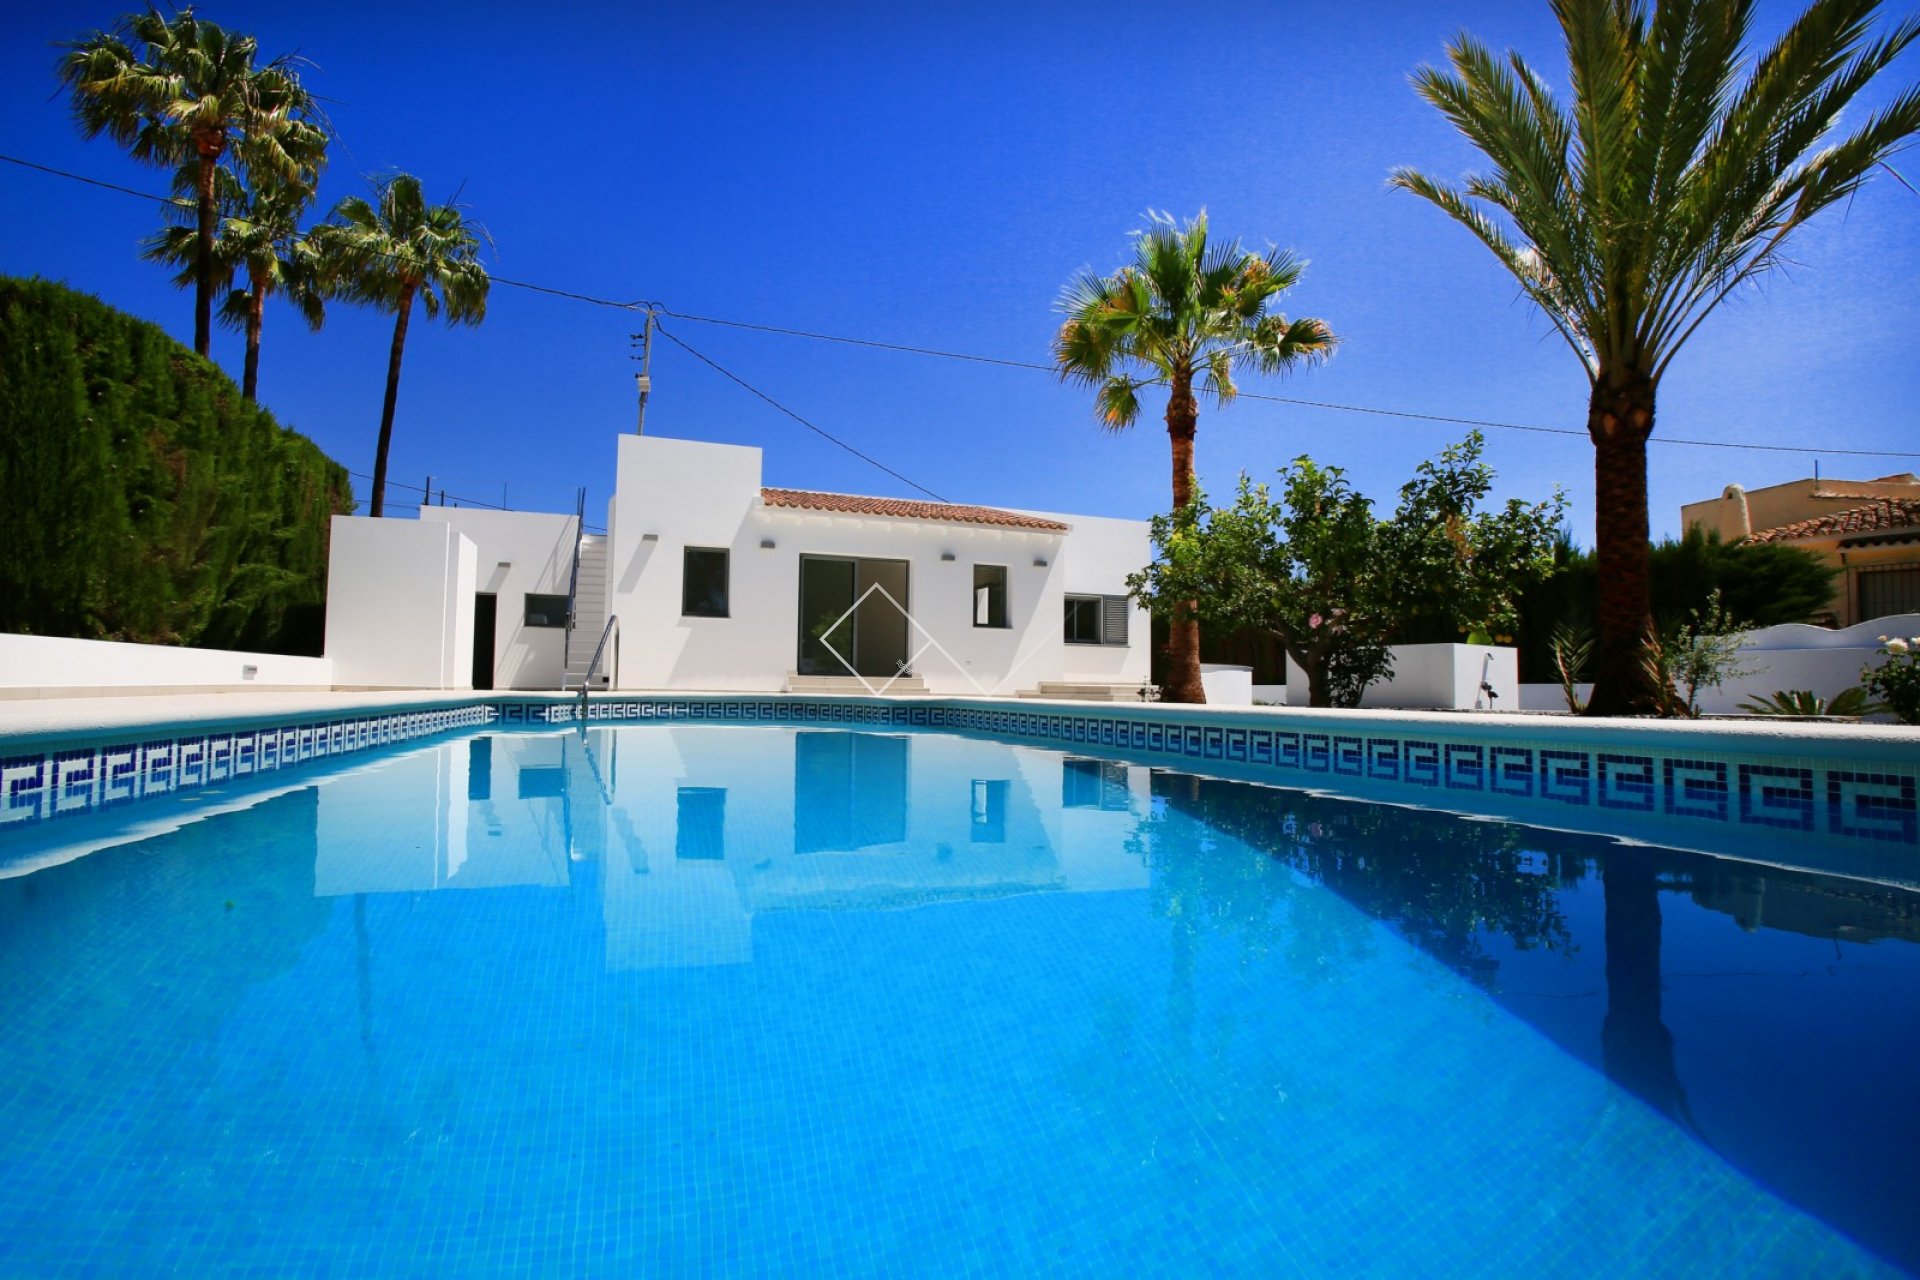 zwembad palmbomen - Gerenoveerde villa te koop in Benissa op 200m van het strand